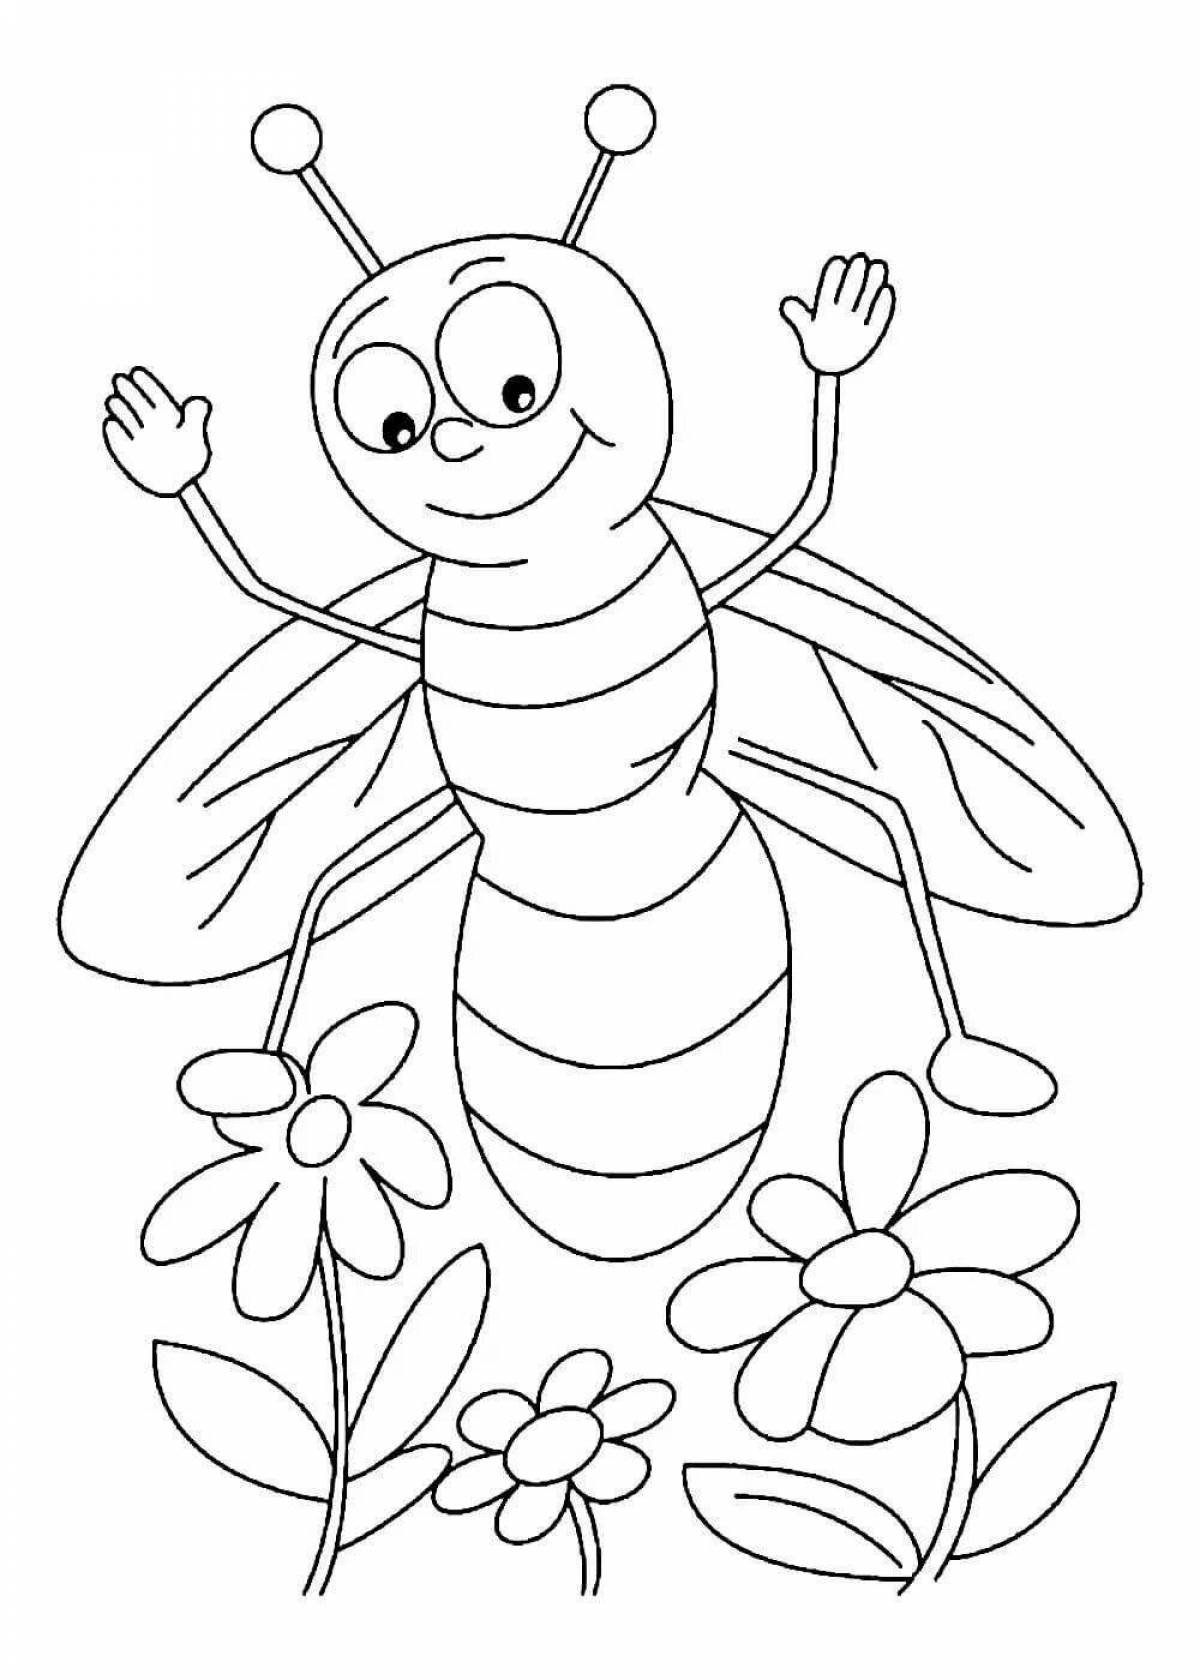 Распечатать раскраску насекомые. Насекомые. Раскраска. Пчела раскраска. Пчела раскраска для детей. Насекомые раскраска для детей.